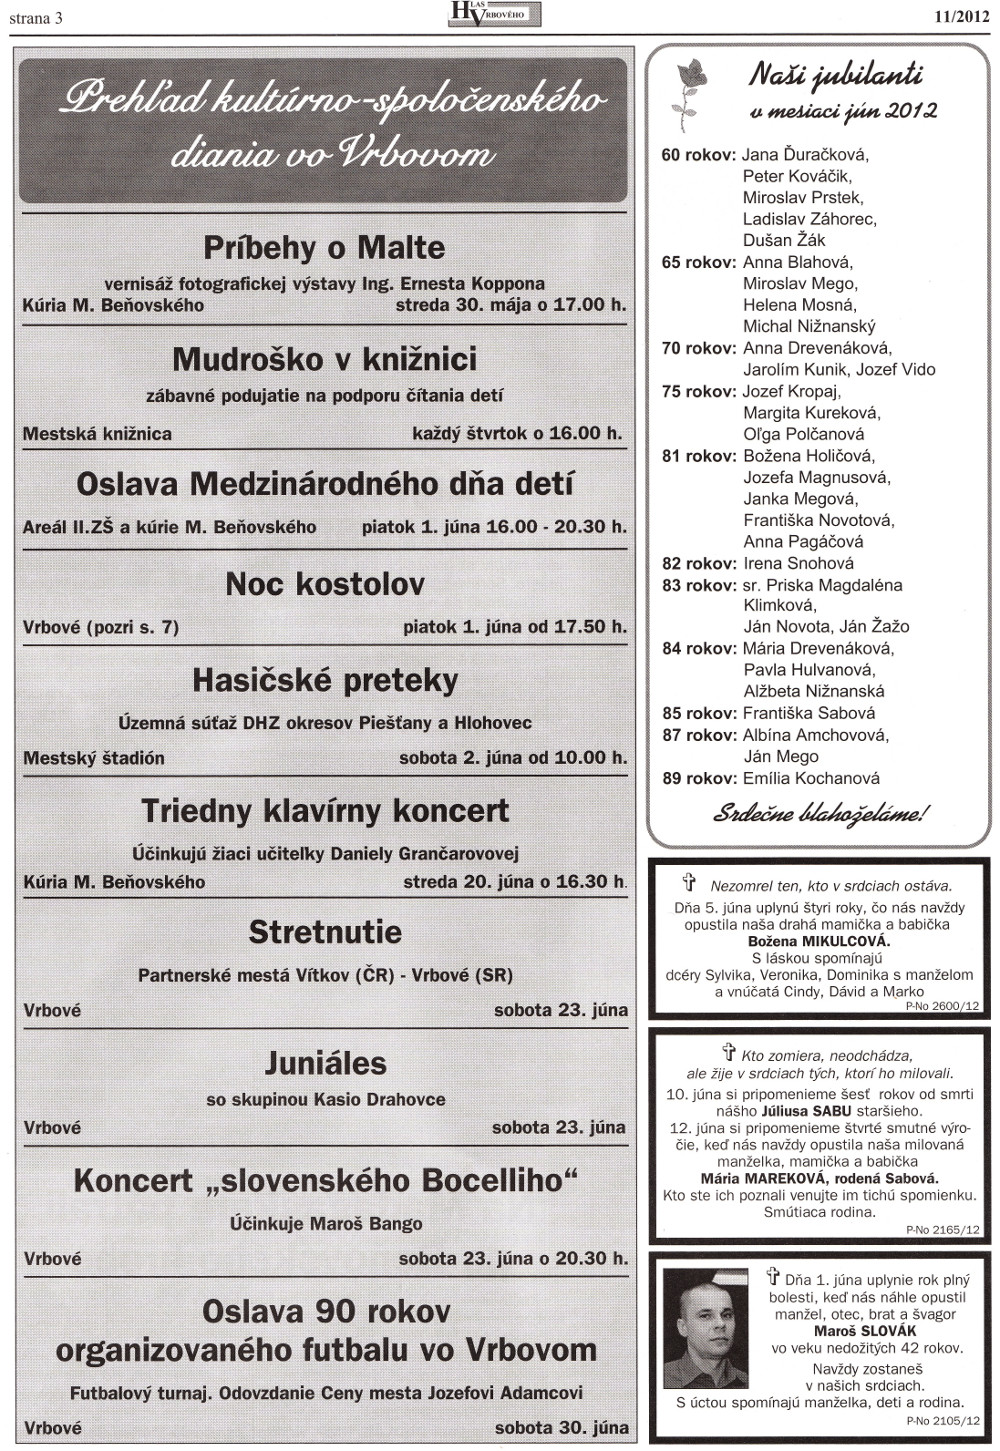 Hlas Vrbového 11/2012, strana 3